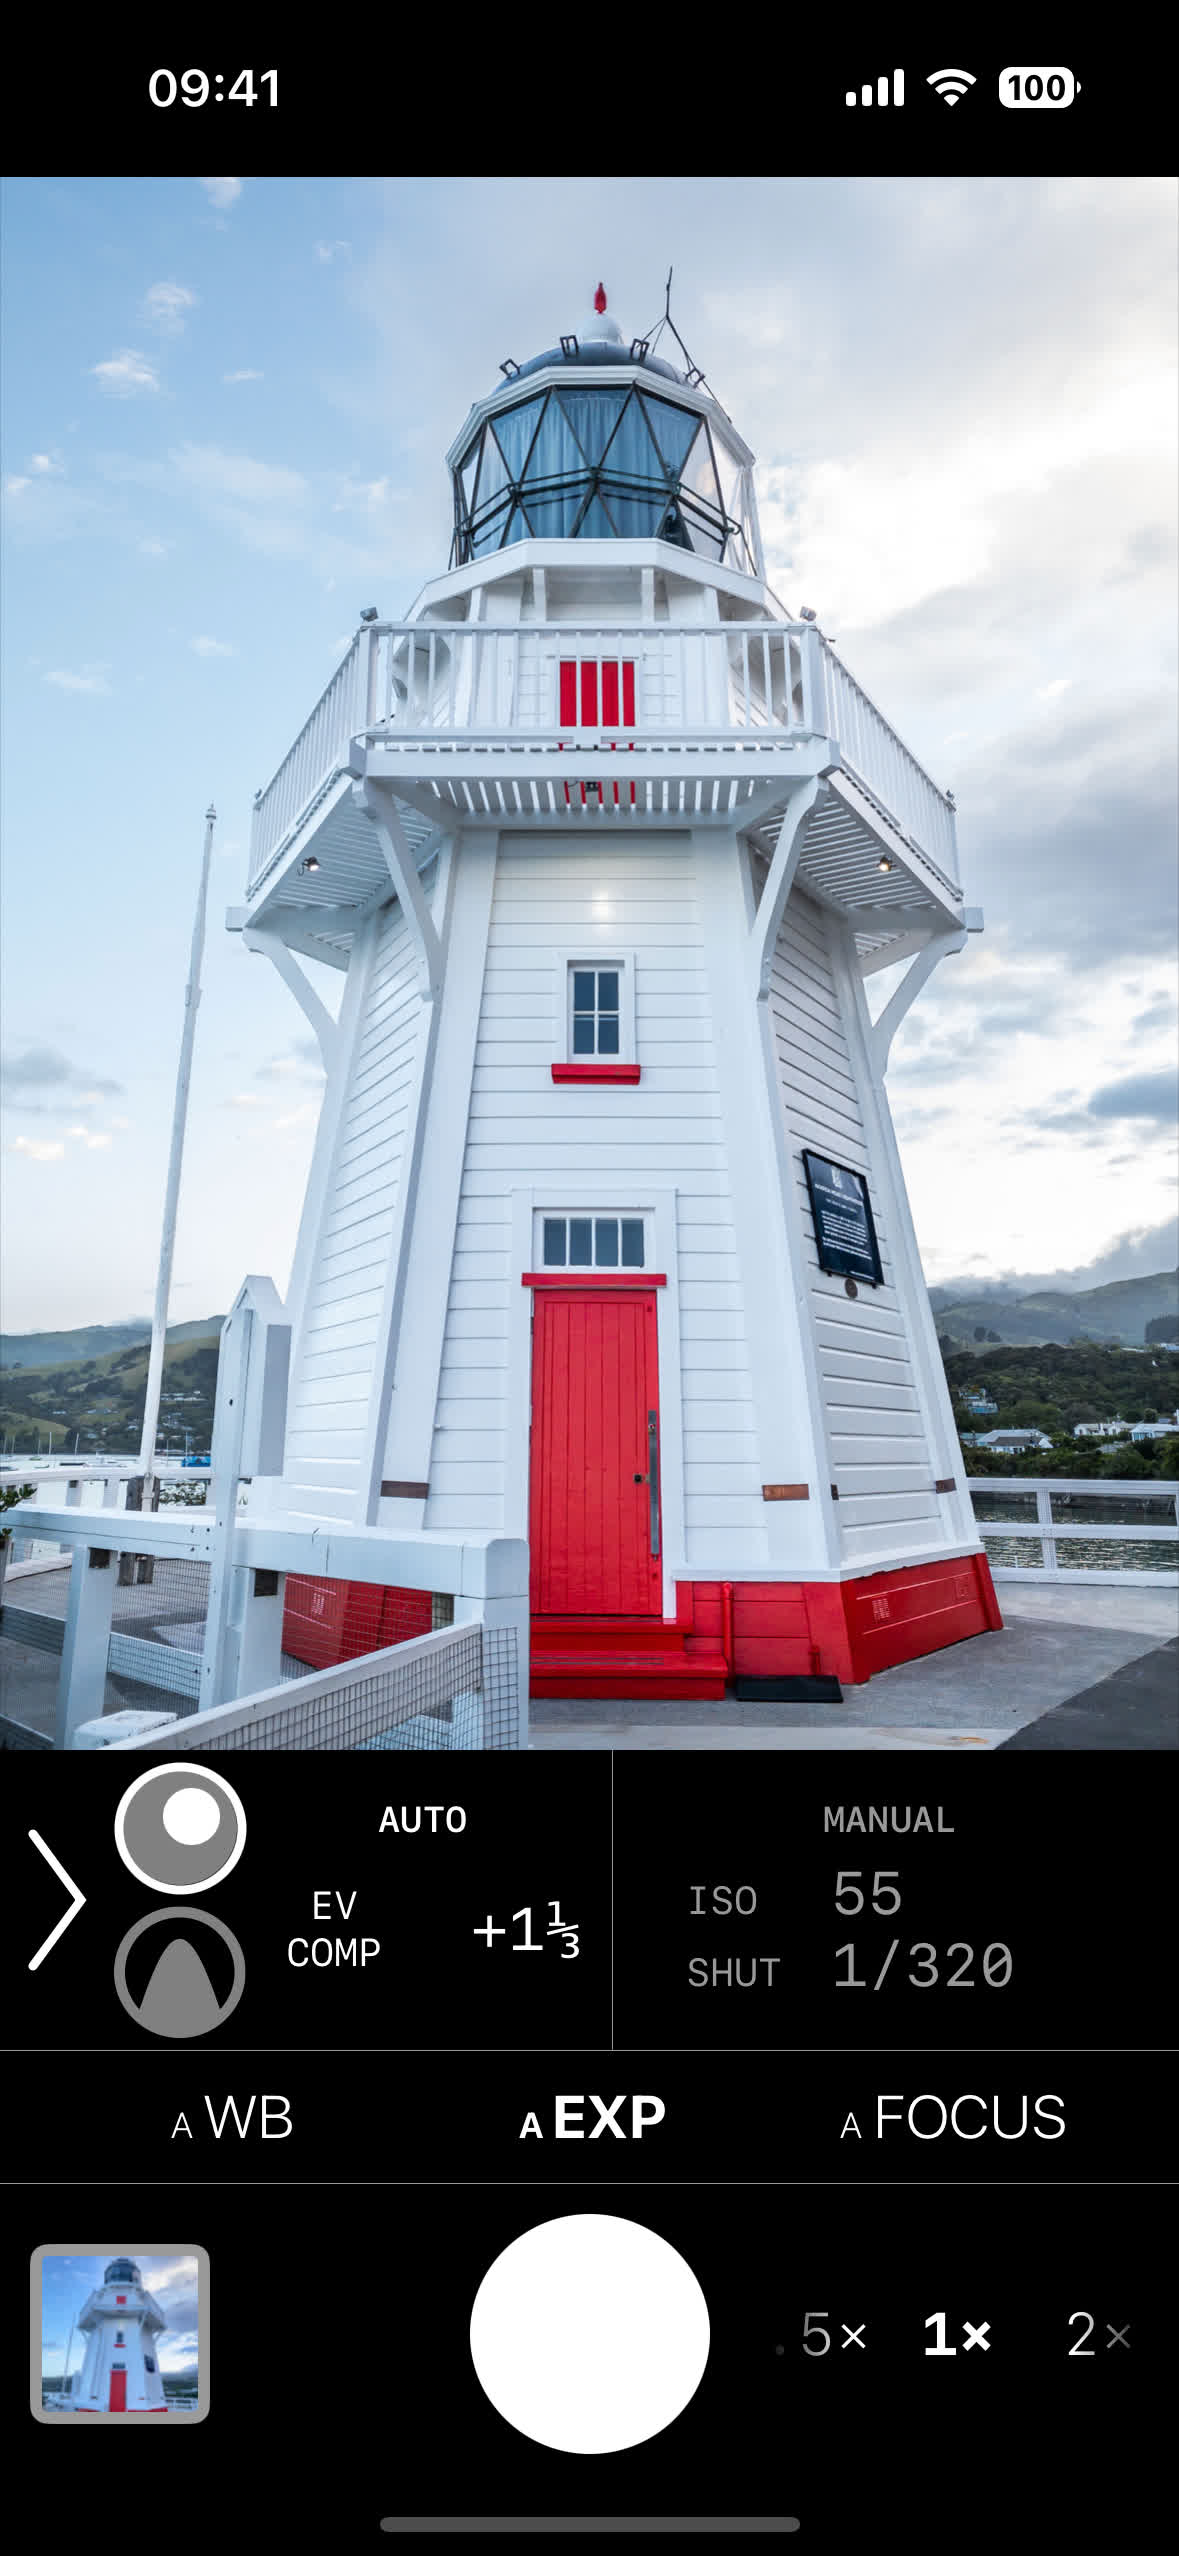 App screenshot of lighthouse scene